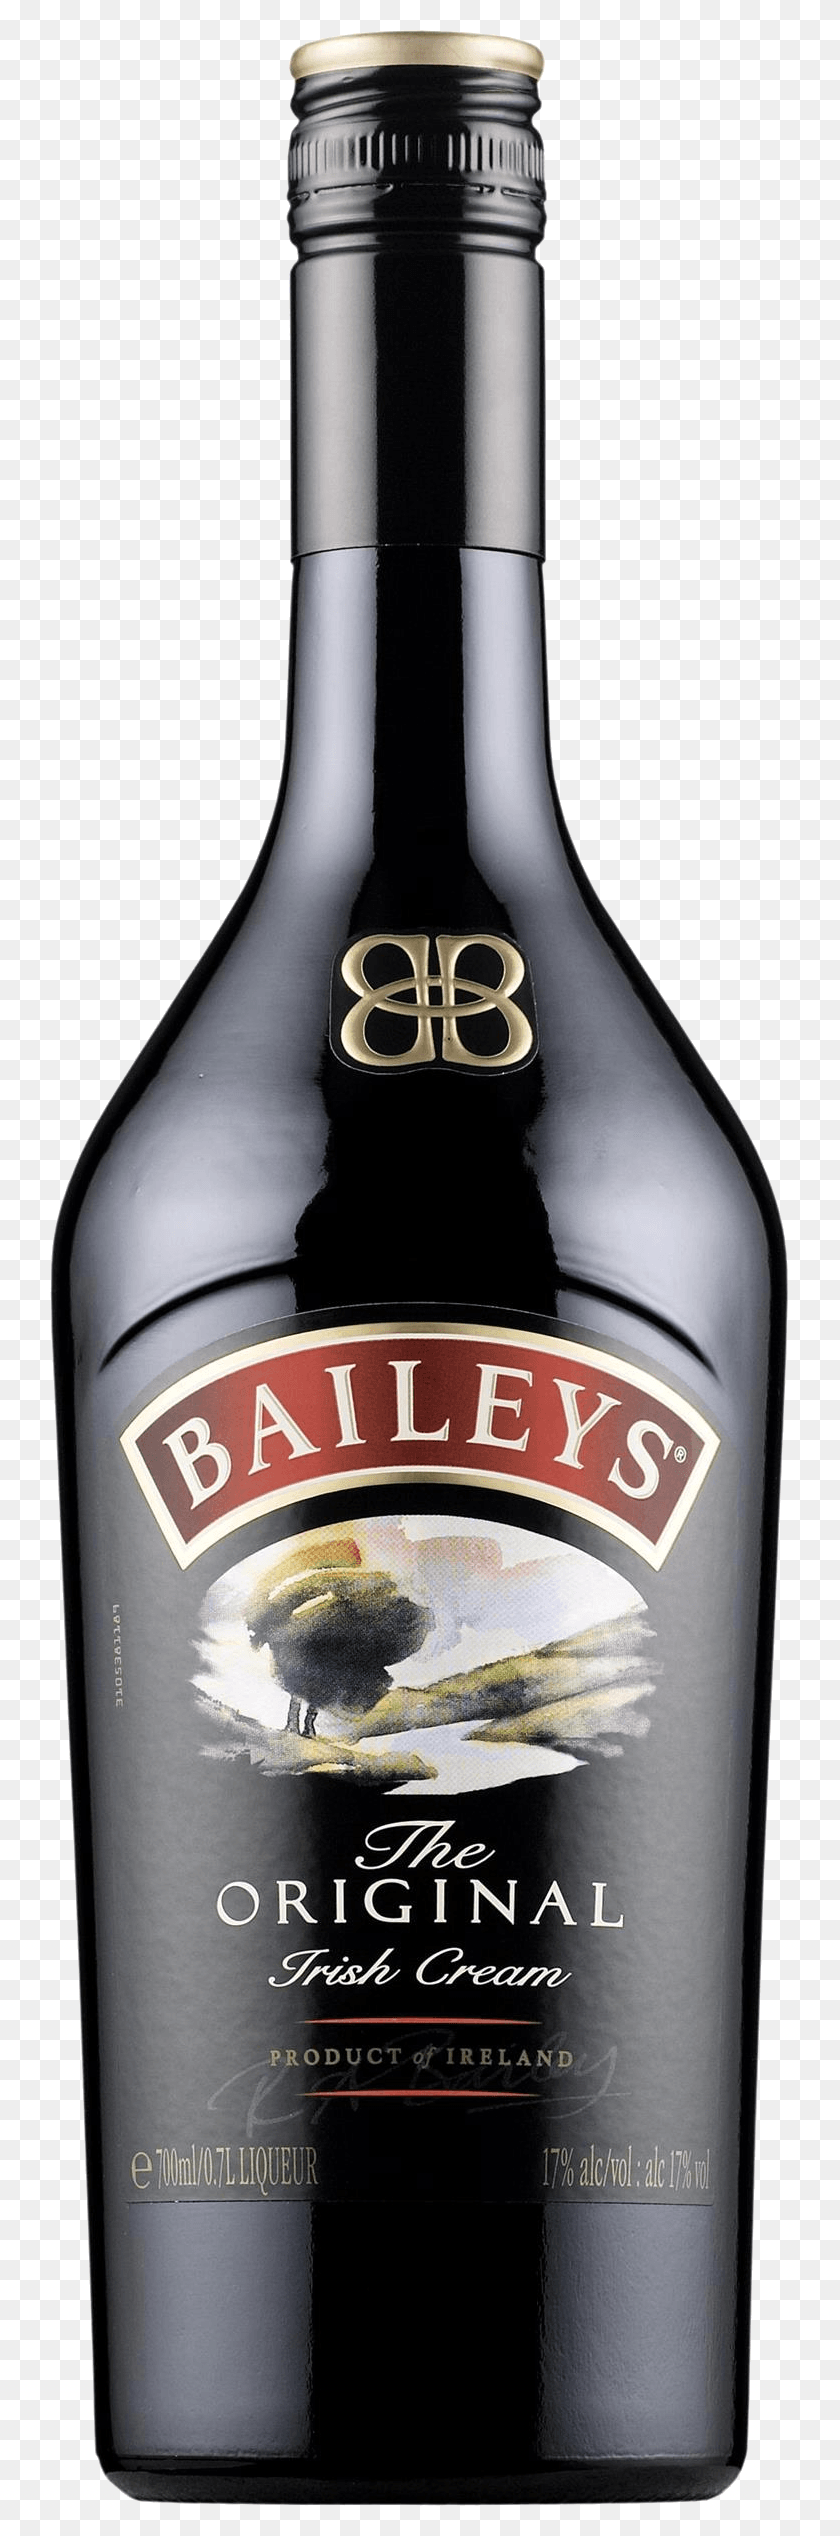 739x2476 Baileys Original Irish Cream Baileys Liquor, Beer, Alcohol, Beverage HD PNG Download